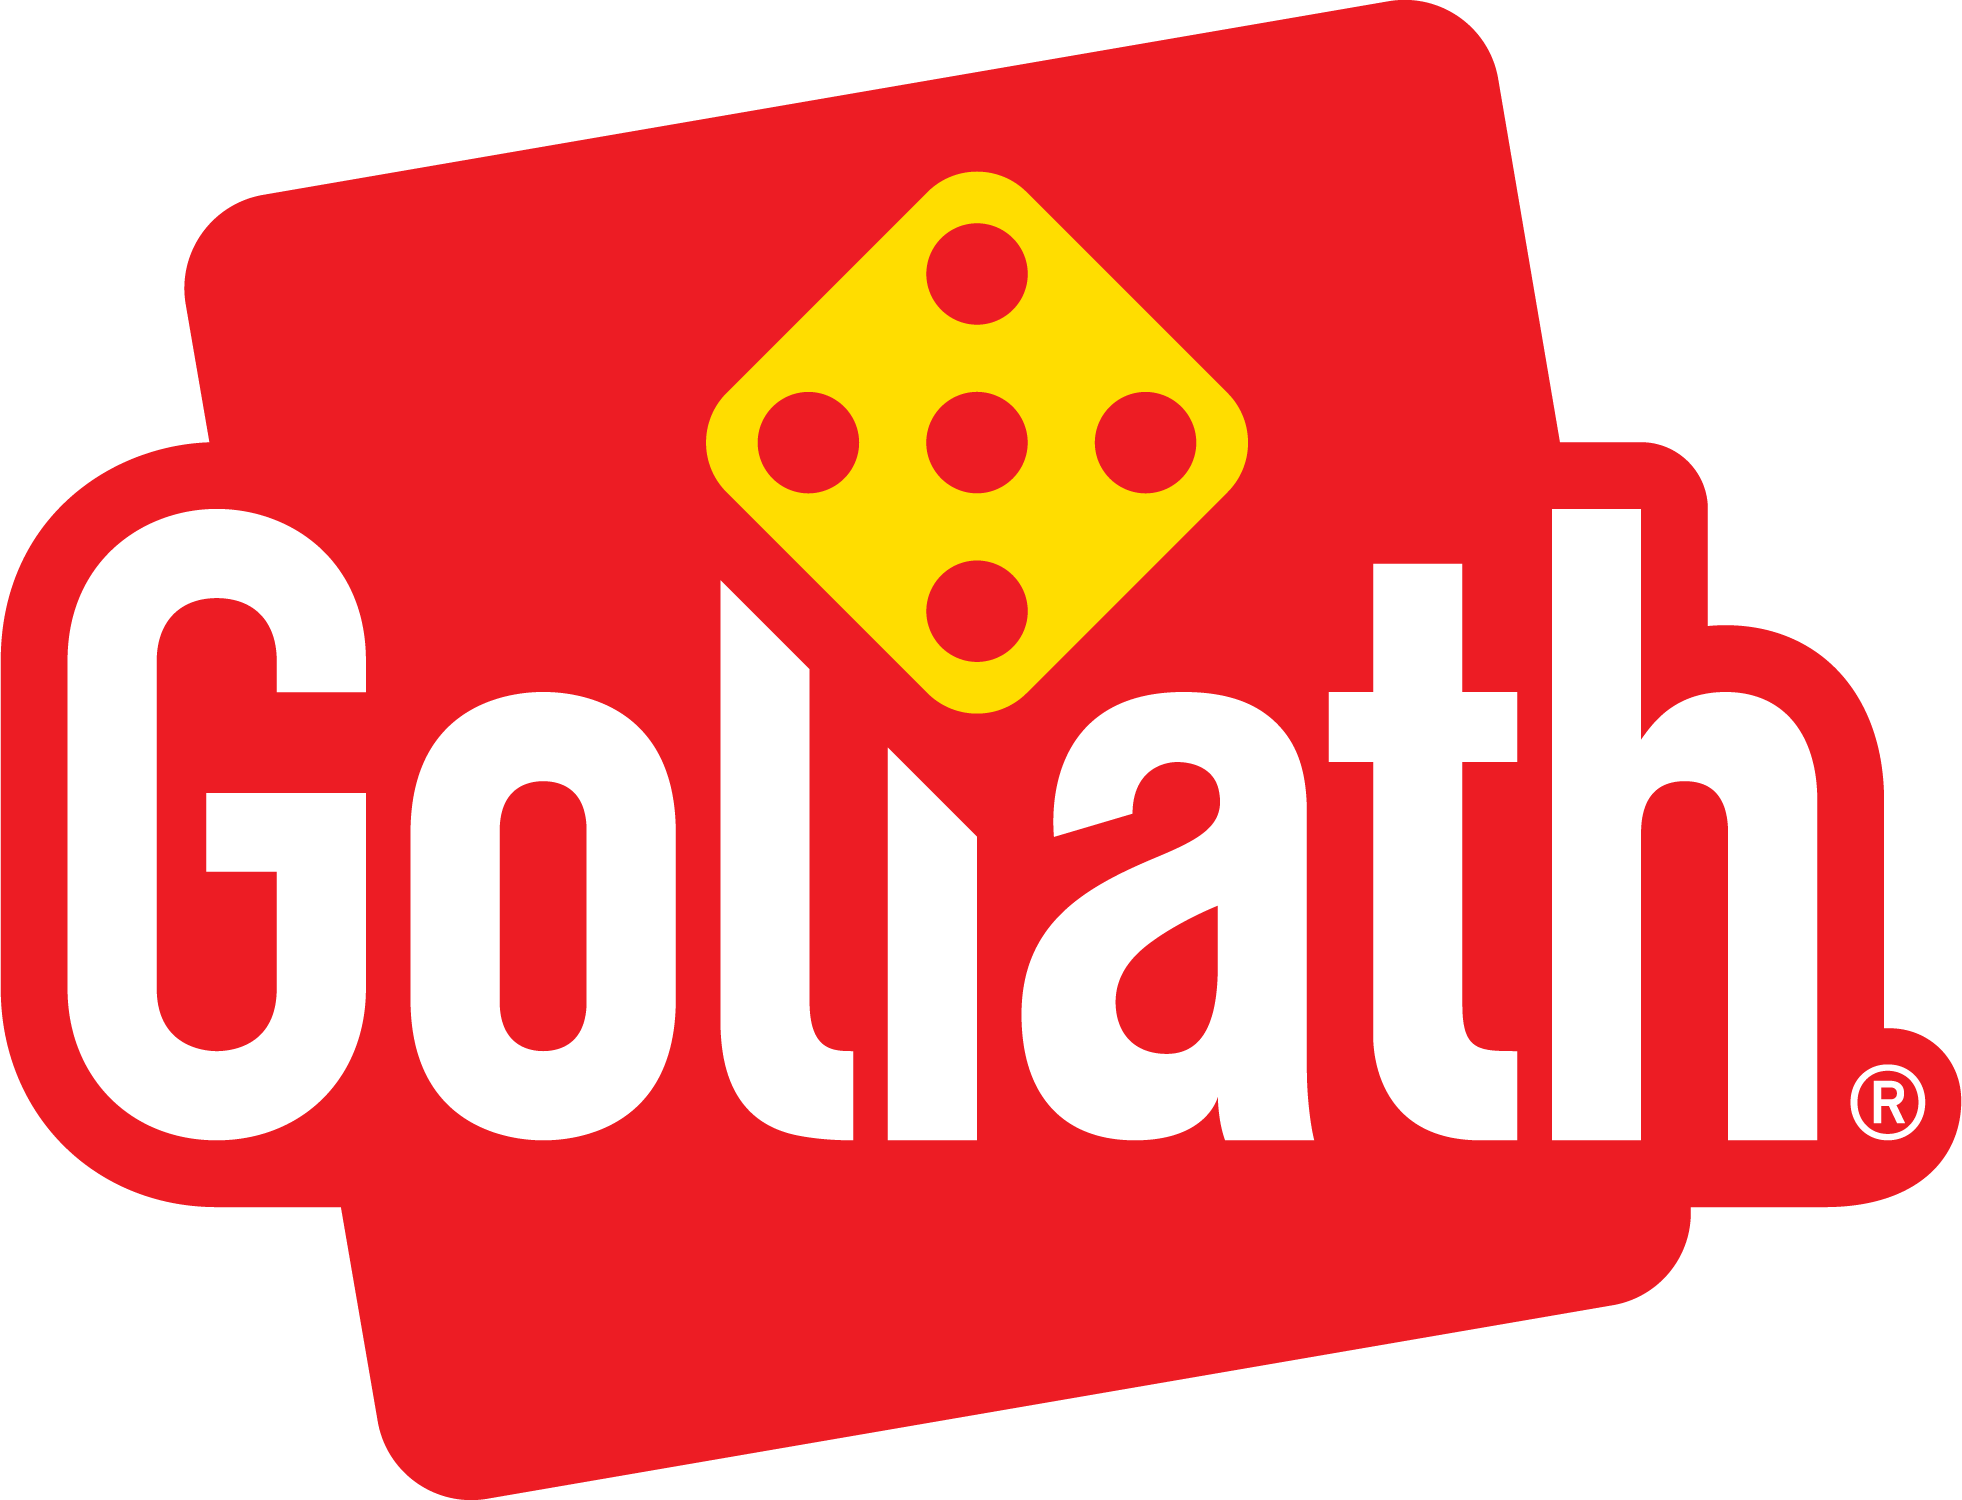 Goliath BV